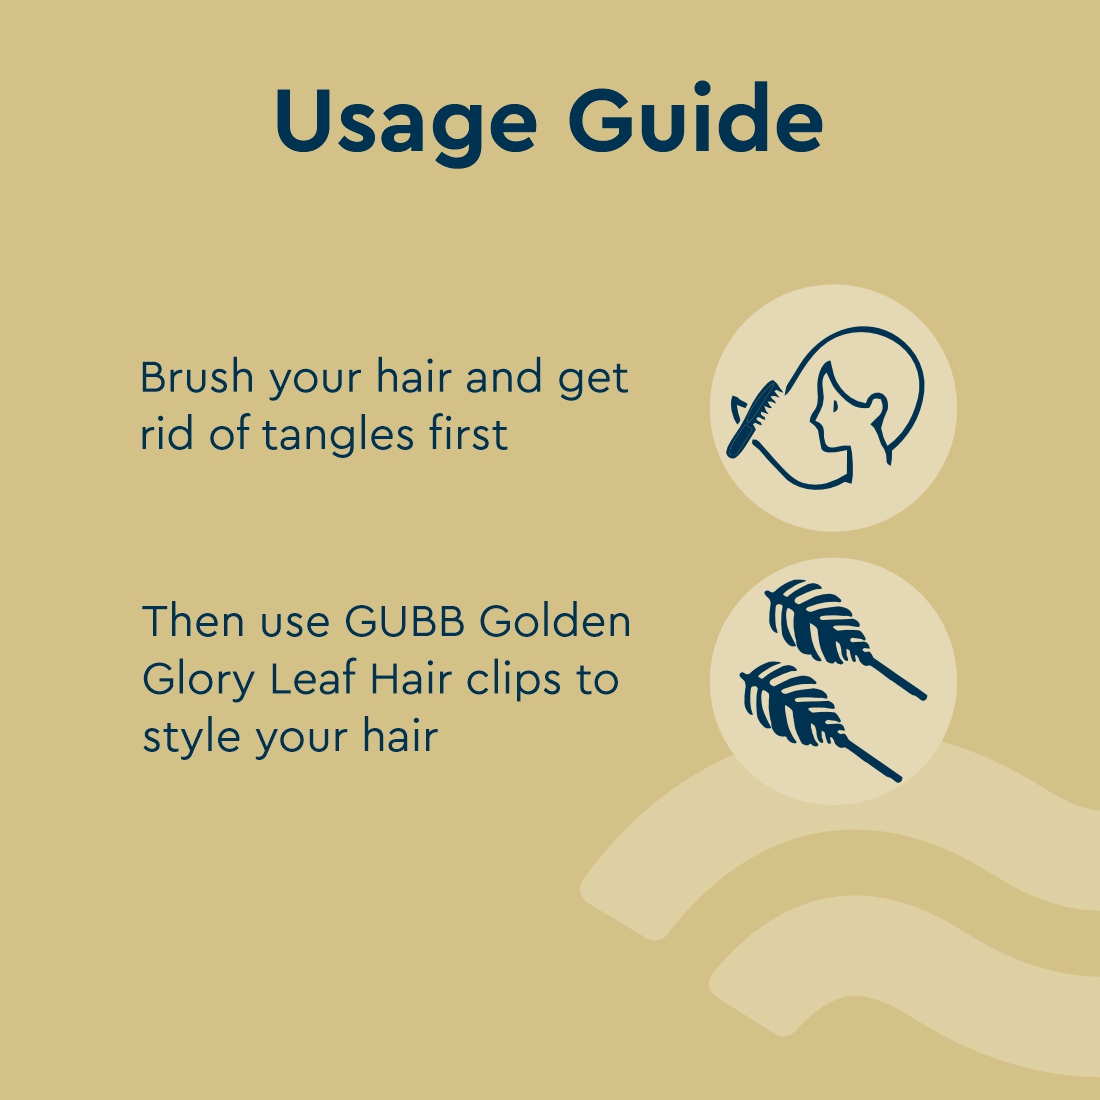 GOLDEN GLORY LEAF HAIR CLIPS